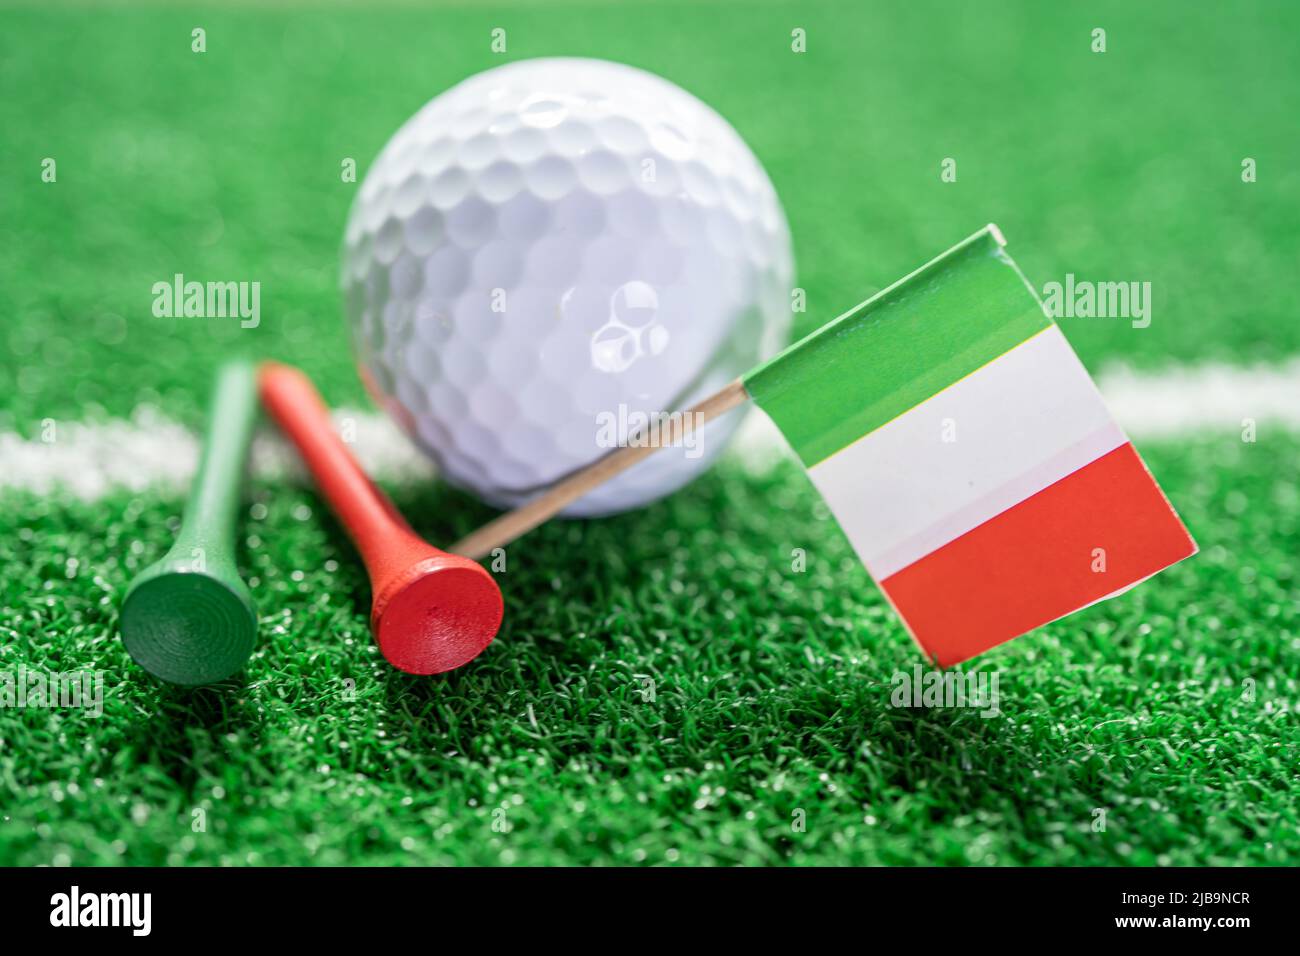 La pelota de golf con bandera de Italia y tee en césped verde o césped es el deporte más popular del mundo. Foto de stock